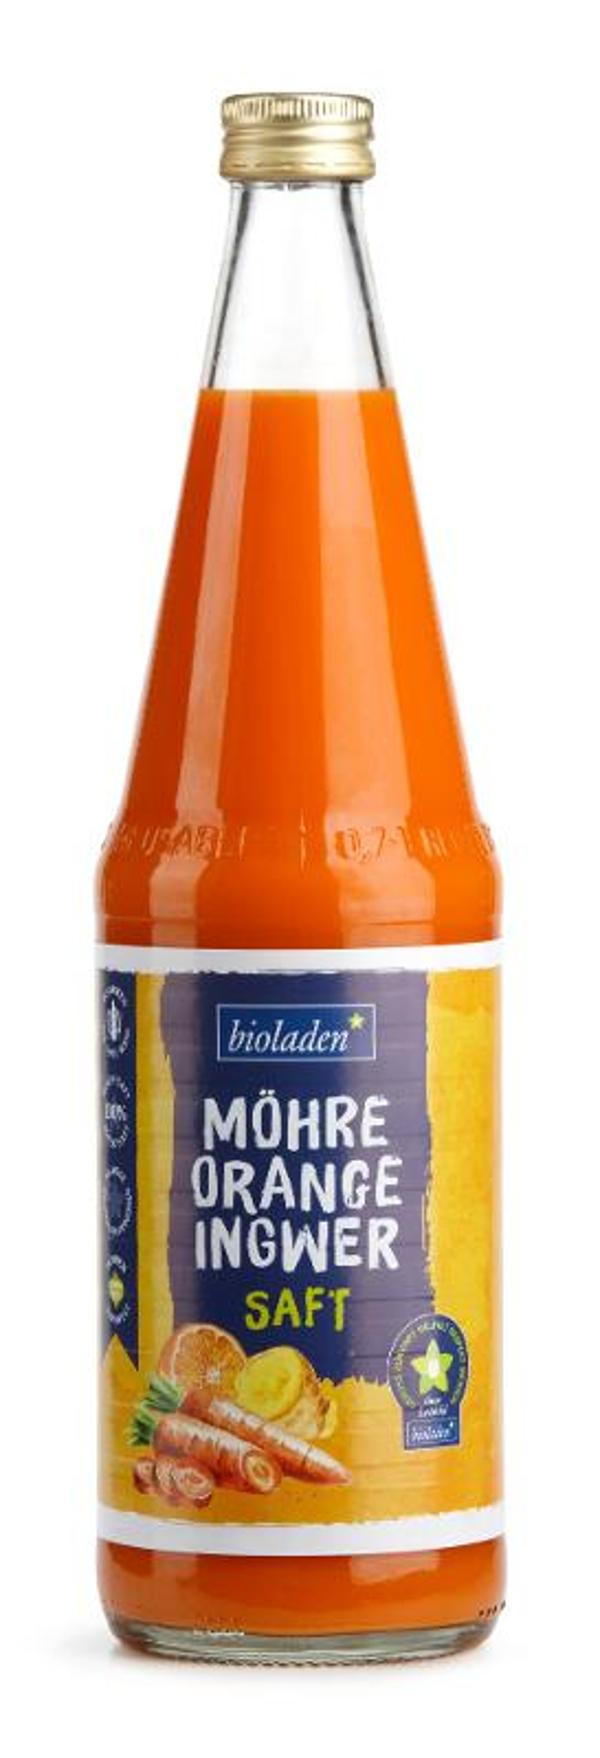 Produktfoto zu Möhre-Orange-Ingwer Saft 0,7l